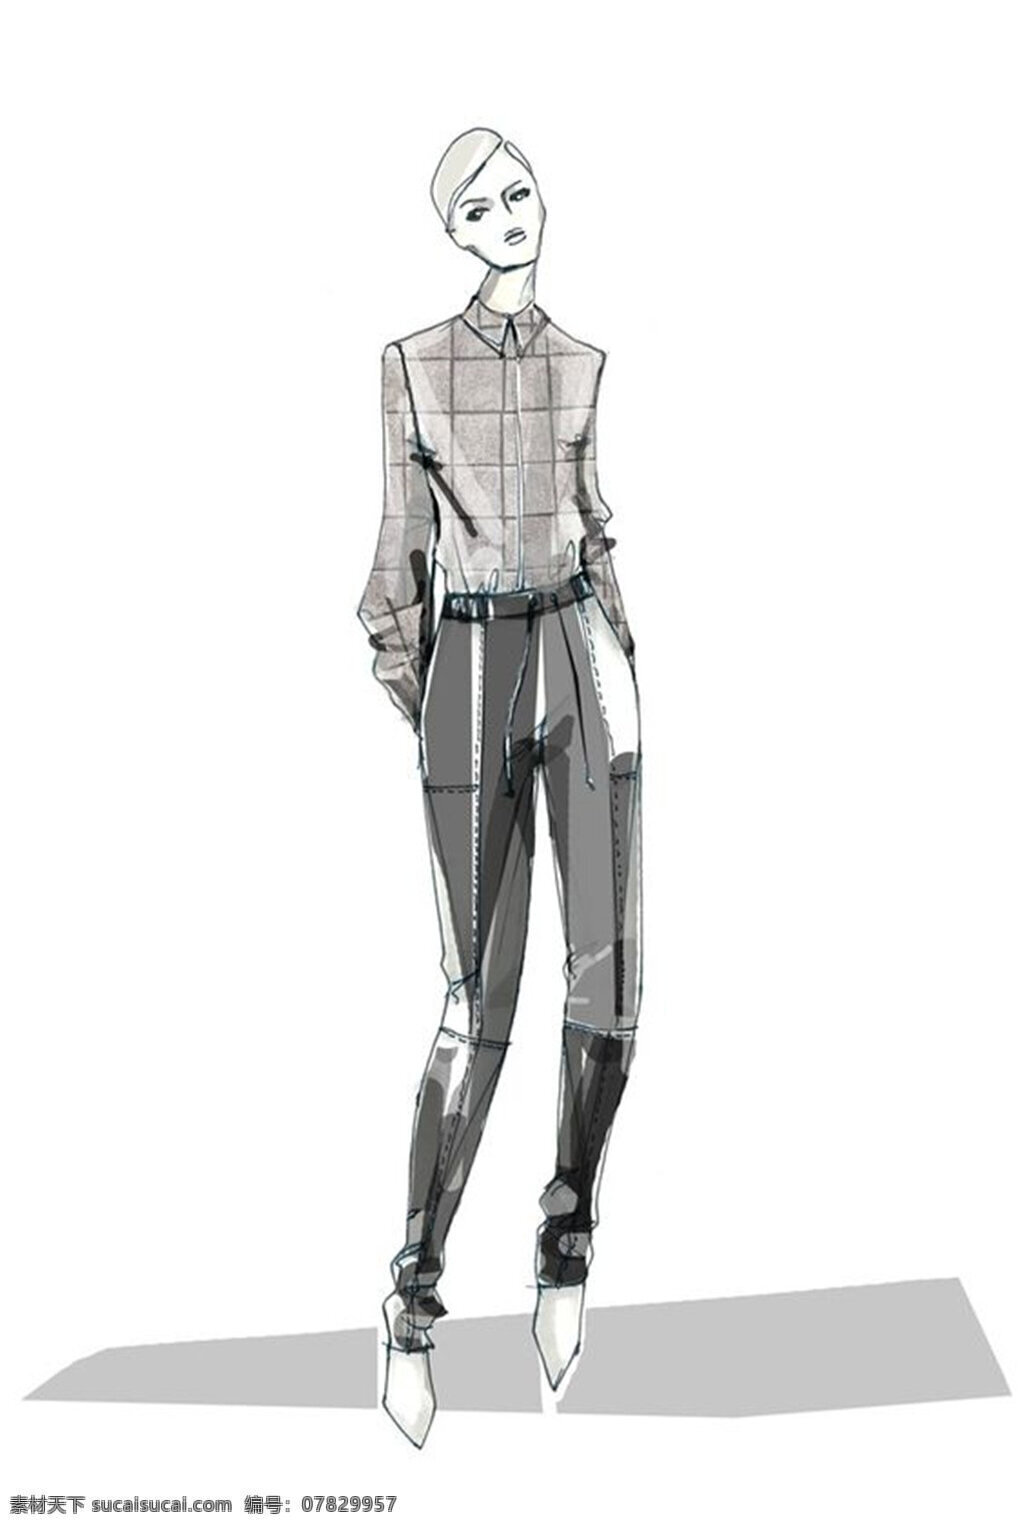 个性 时尚 灰色 衬衫 女装 效果 服装设计 服装效果图 灰色衬衫 女士服装 深灰色裤子